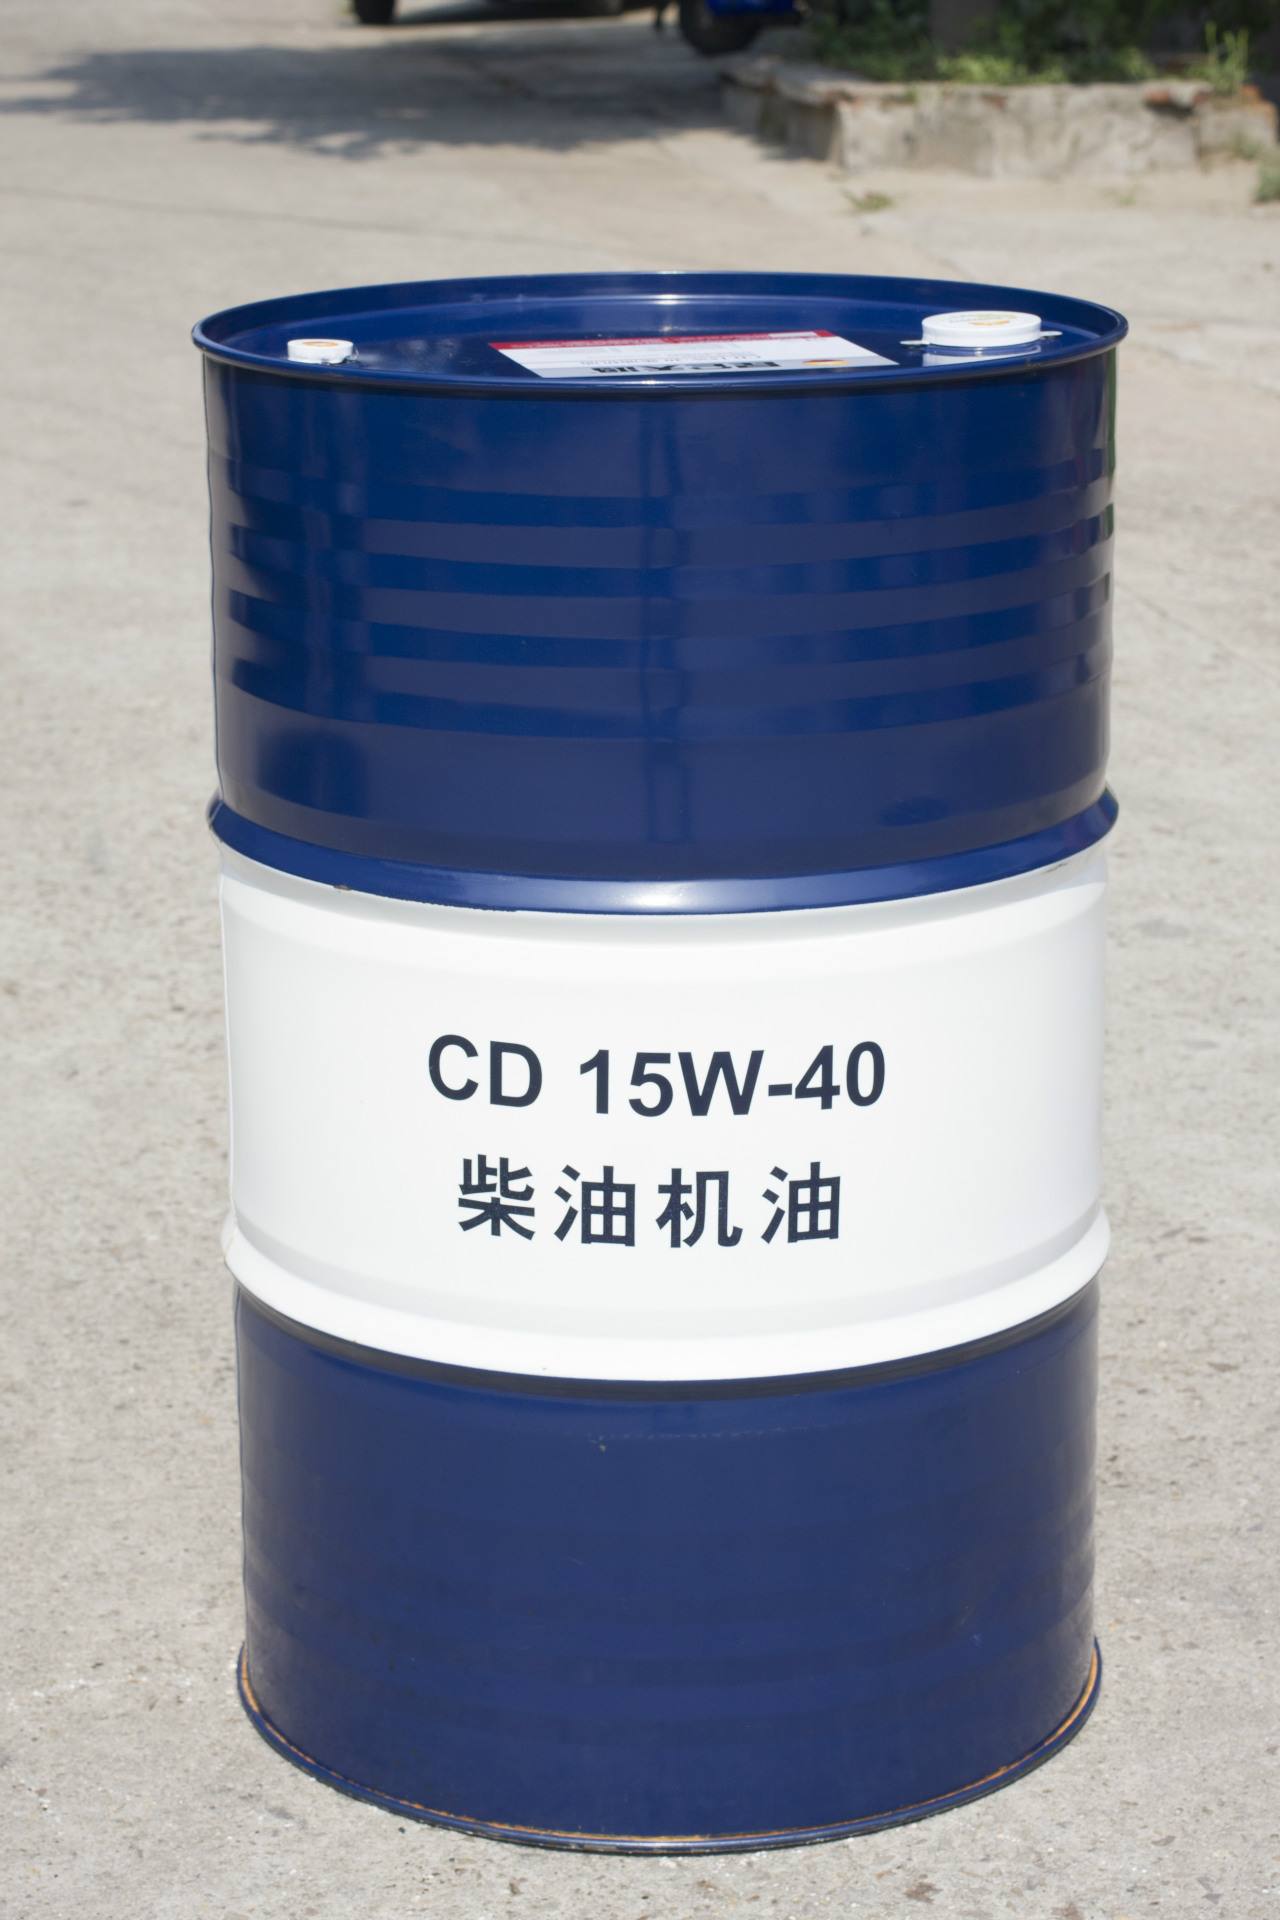 昆仑天威CD 15W-40柴油机油